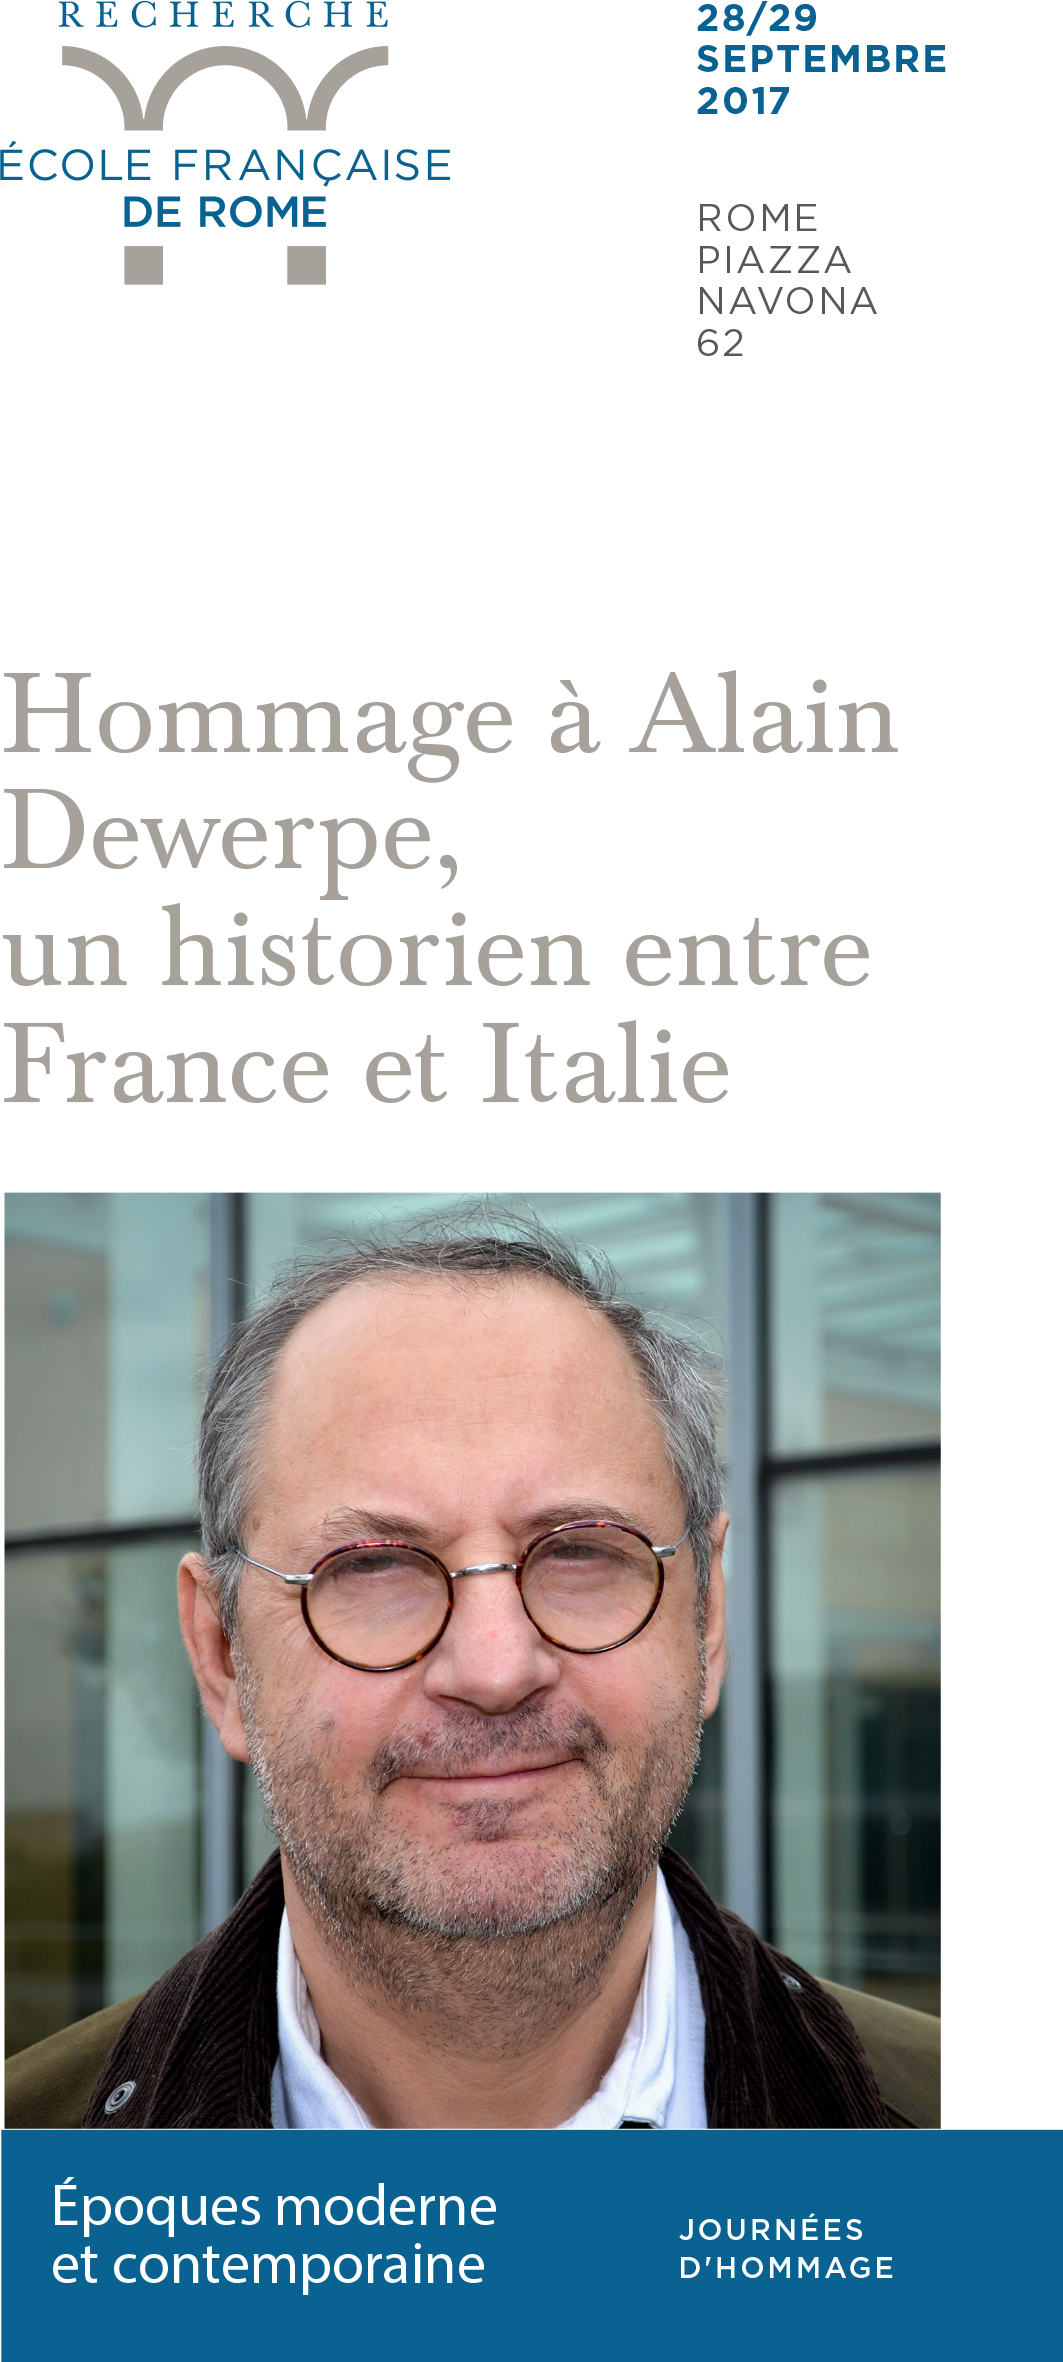 Journées d’hommage à Alain Dewerpe